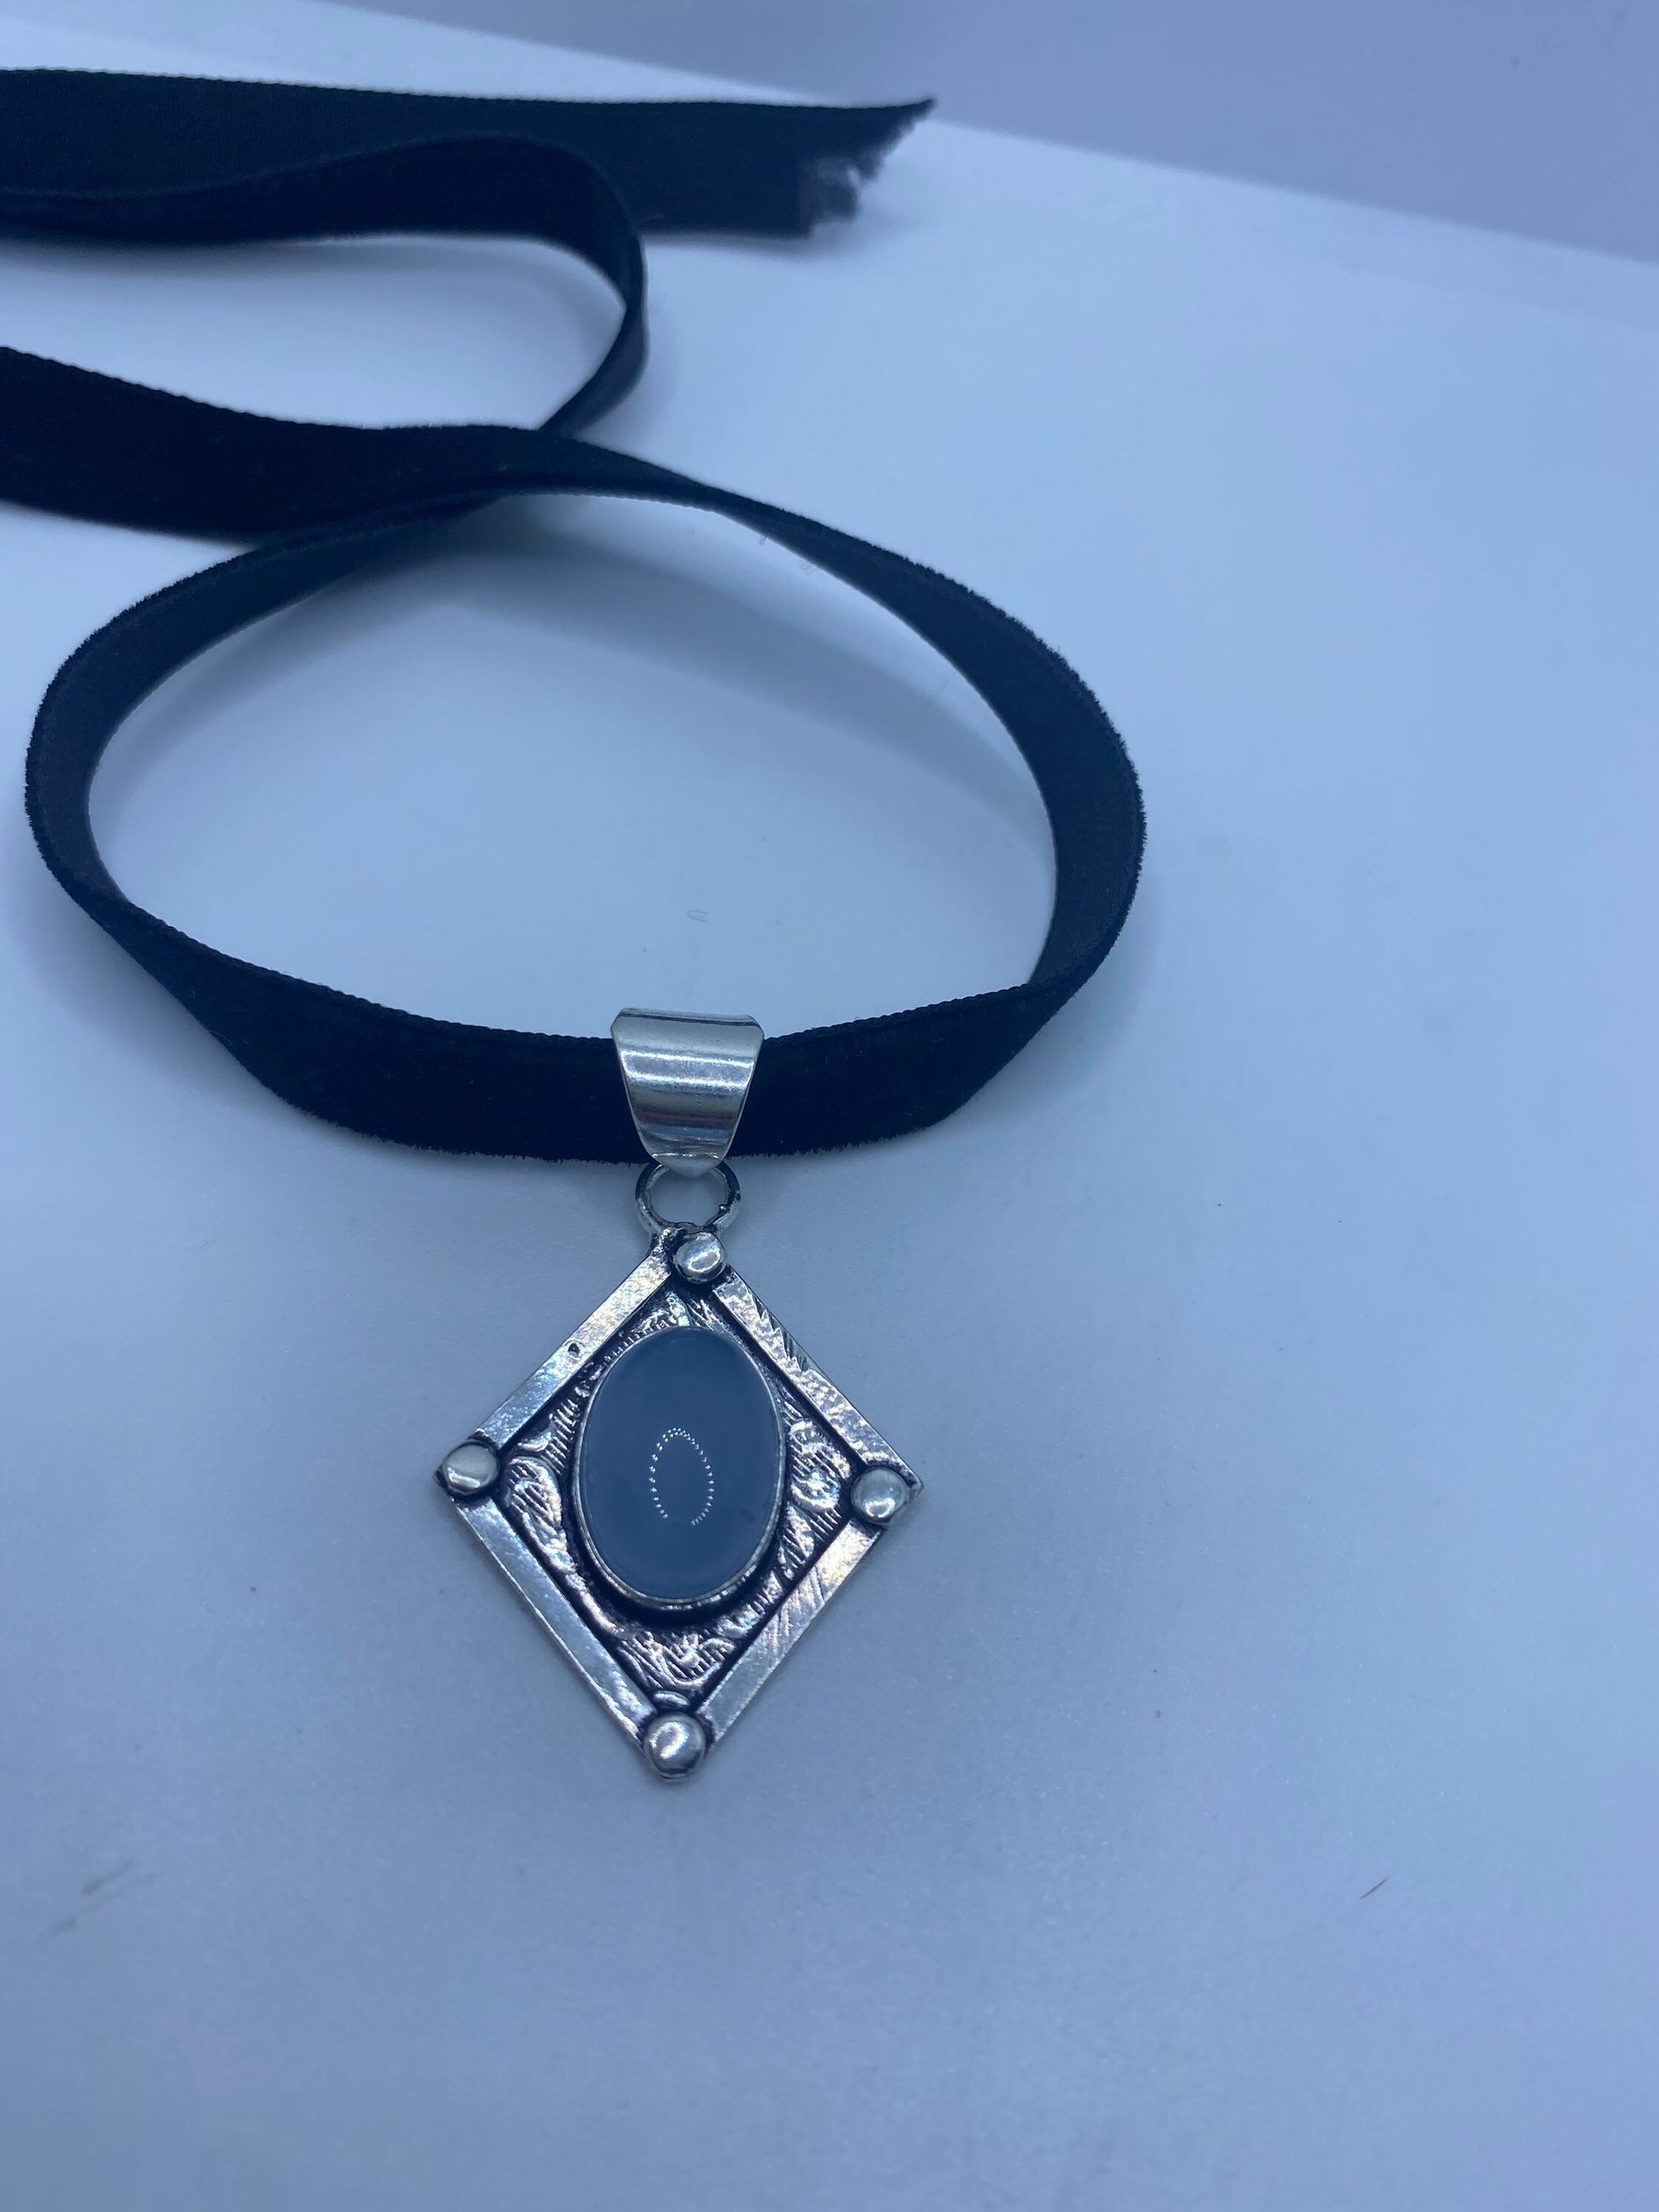 Vintage Blue chalcedony Choker Necklace